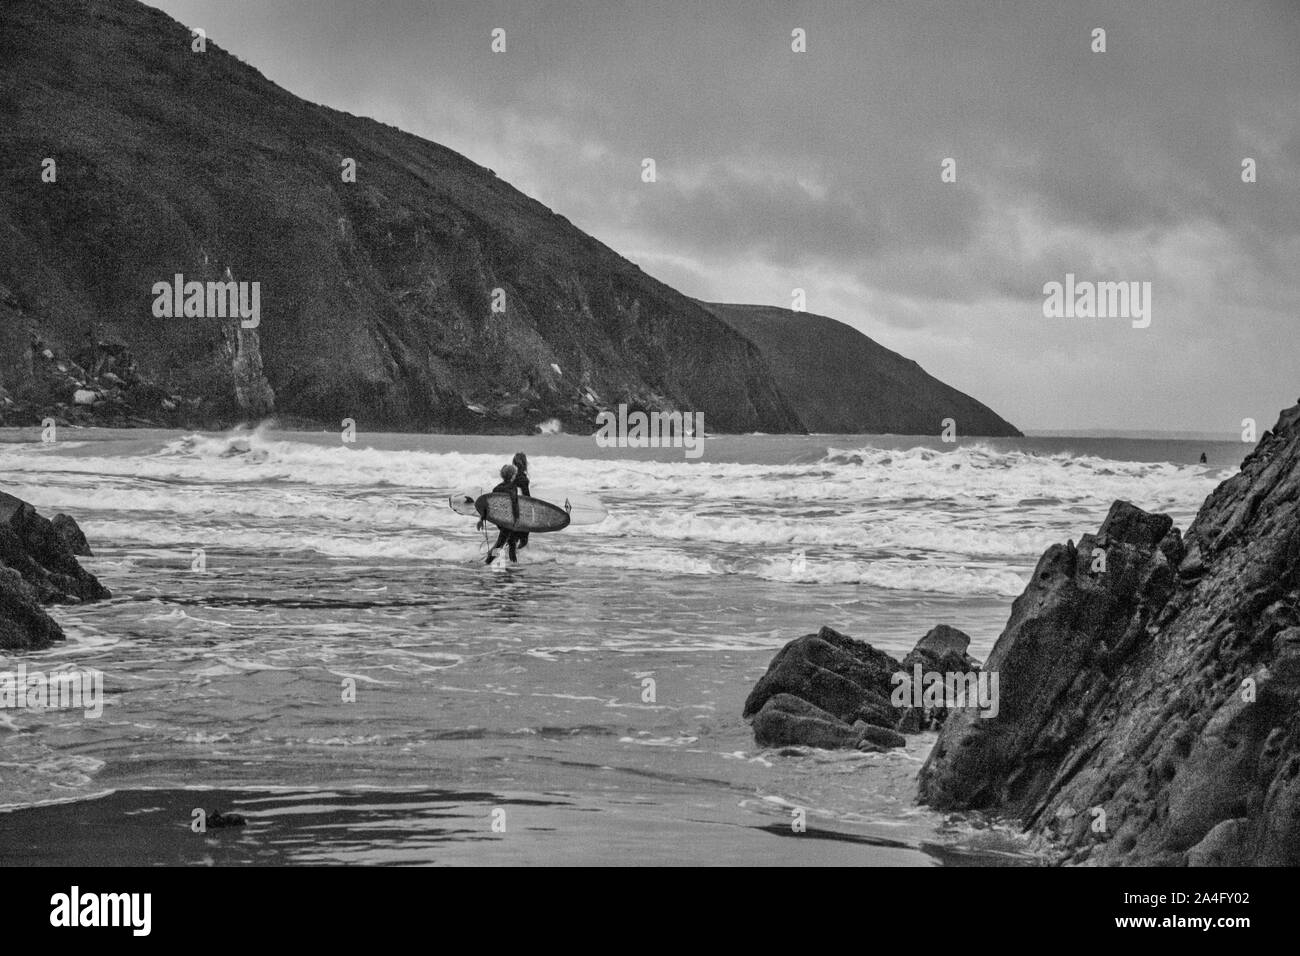 Los surfistas con rumbo a las olas en la luz de la mañana Foto de stock